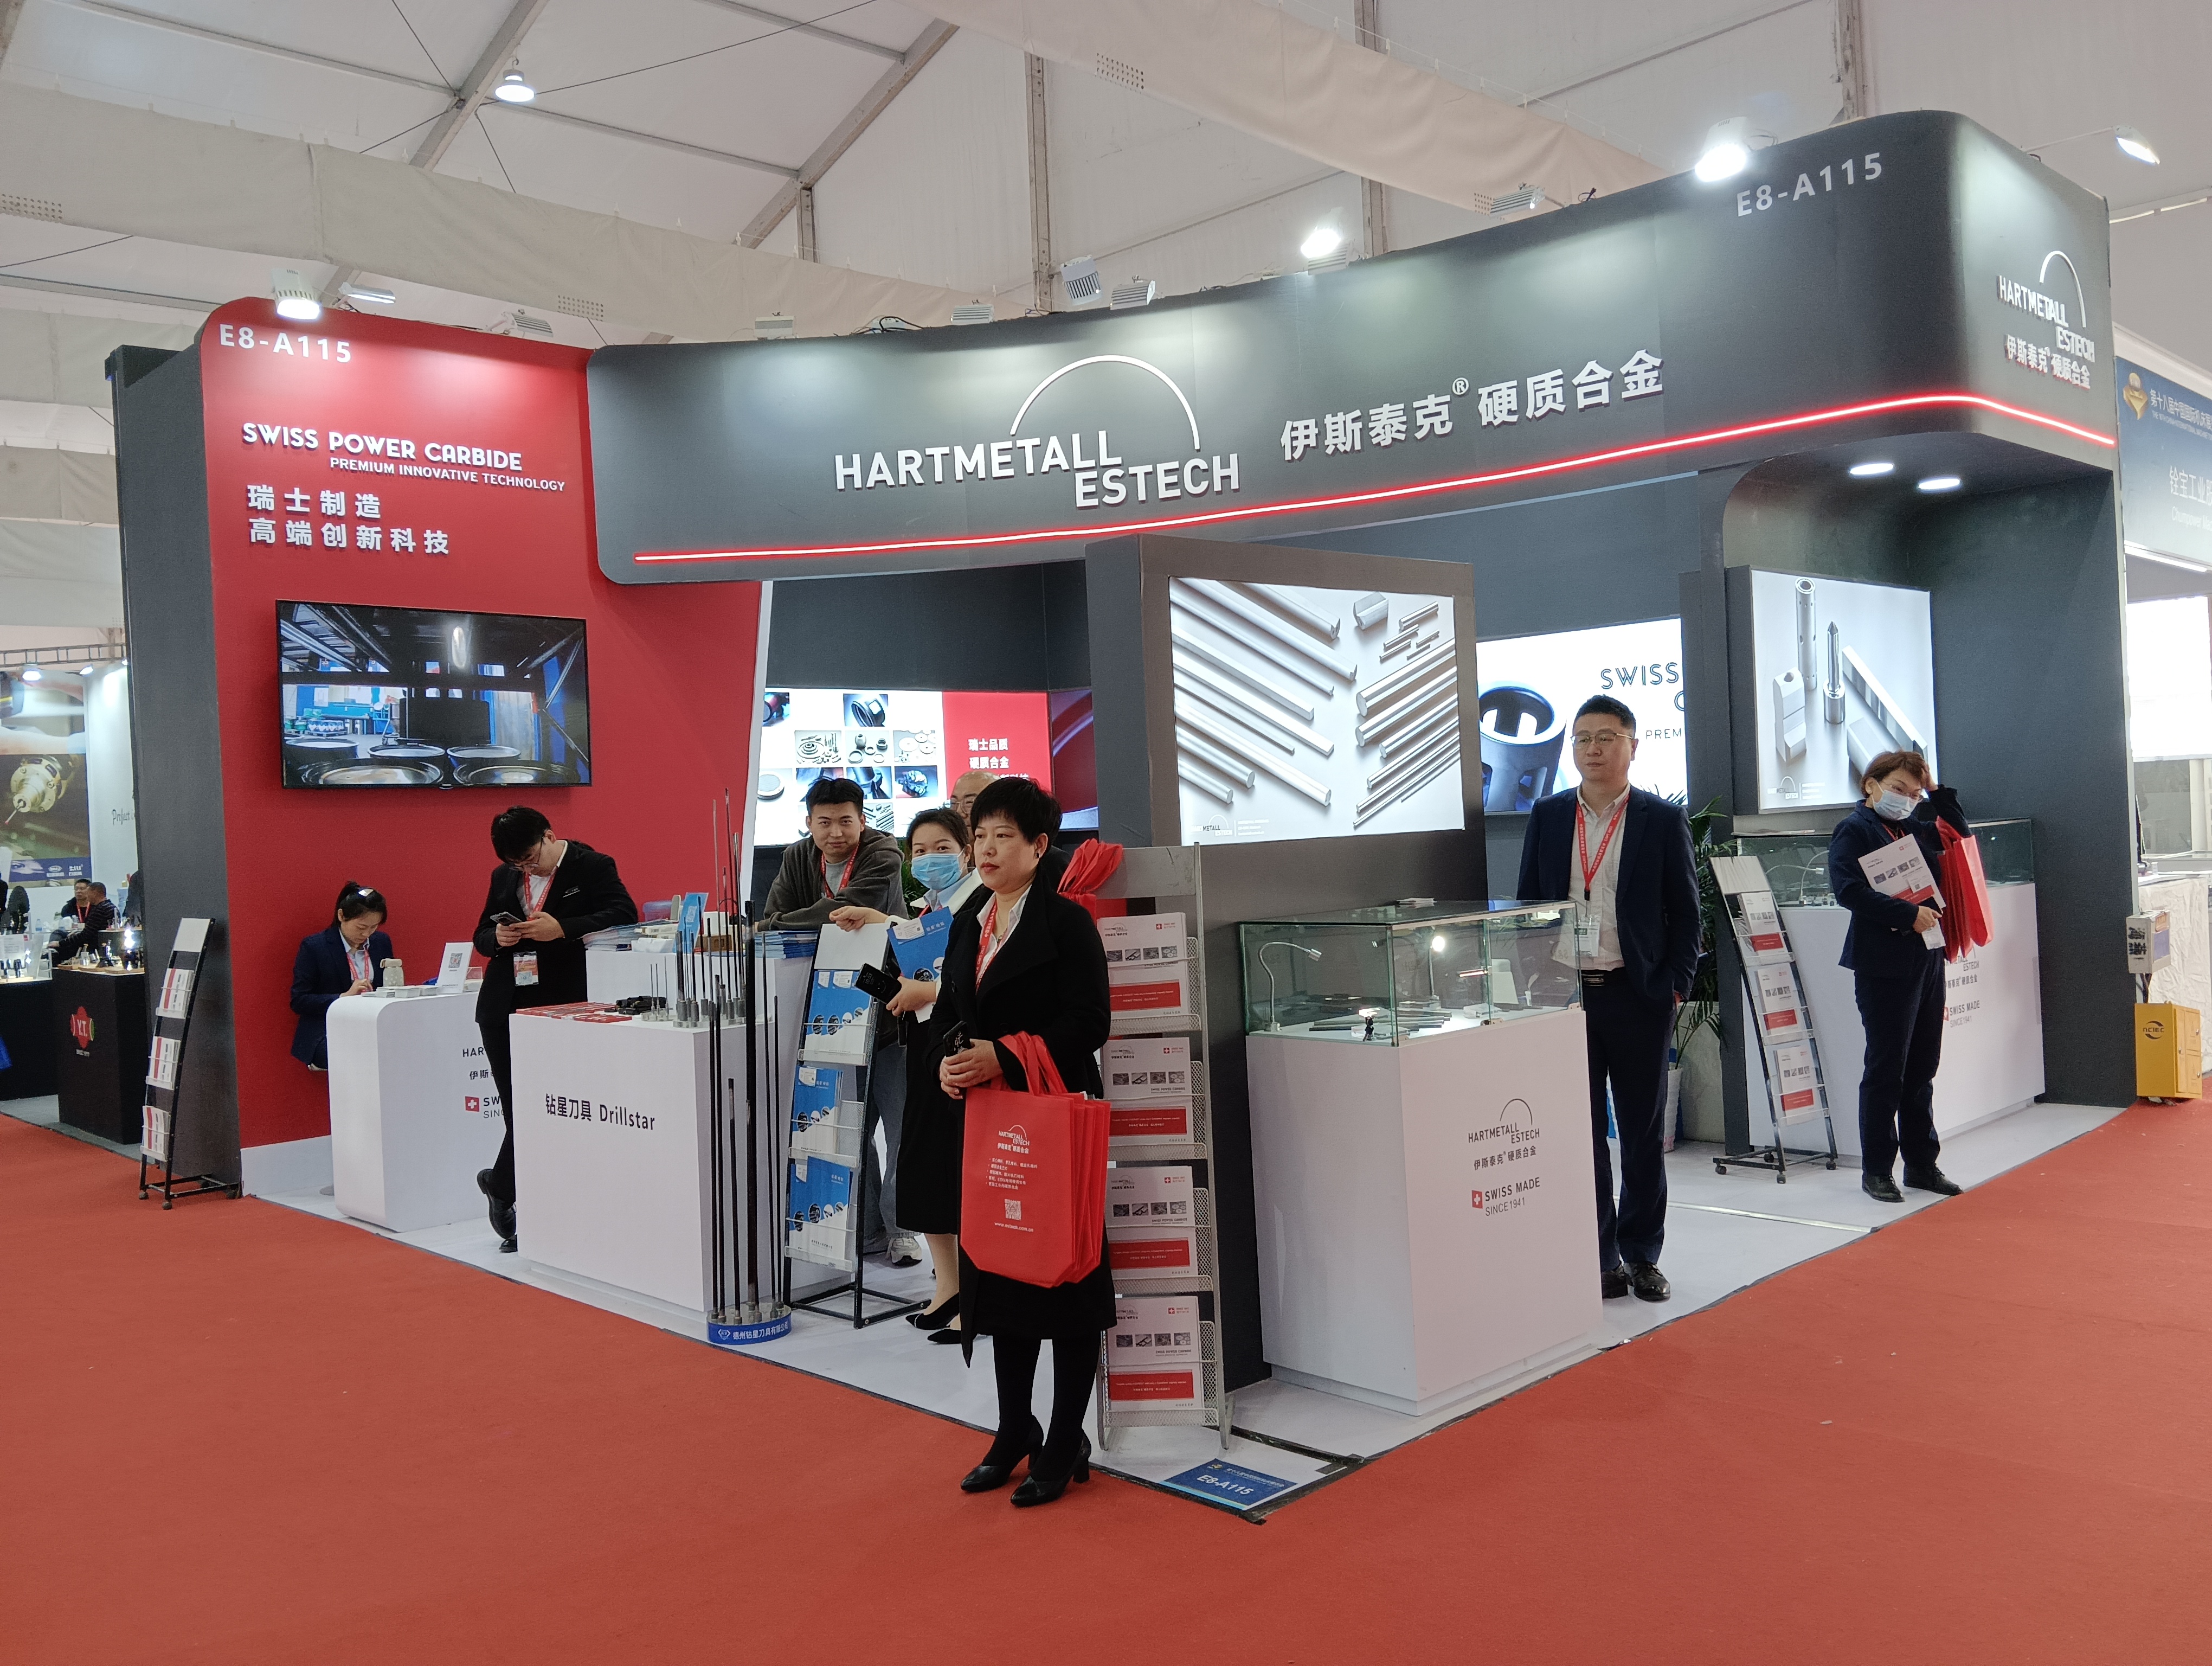 第十八届中国国际机床展览会